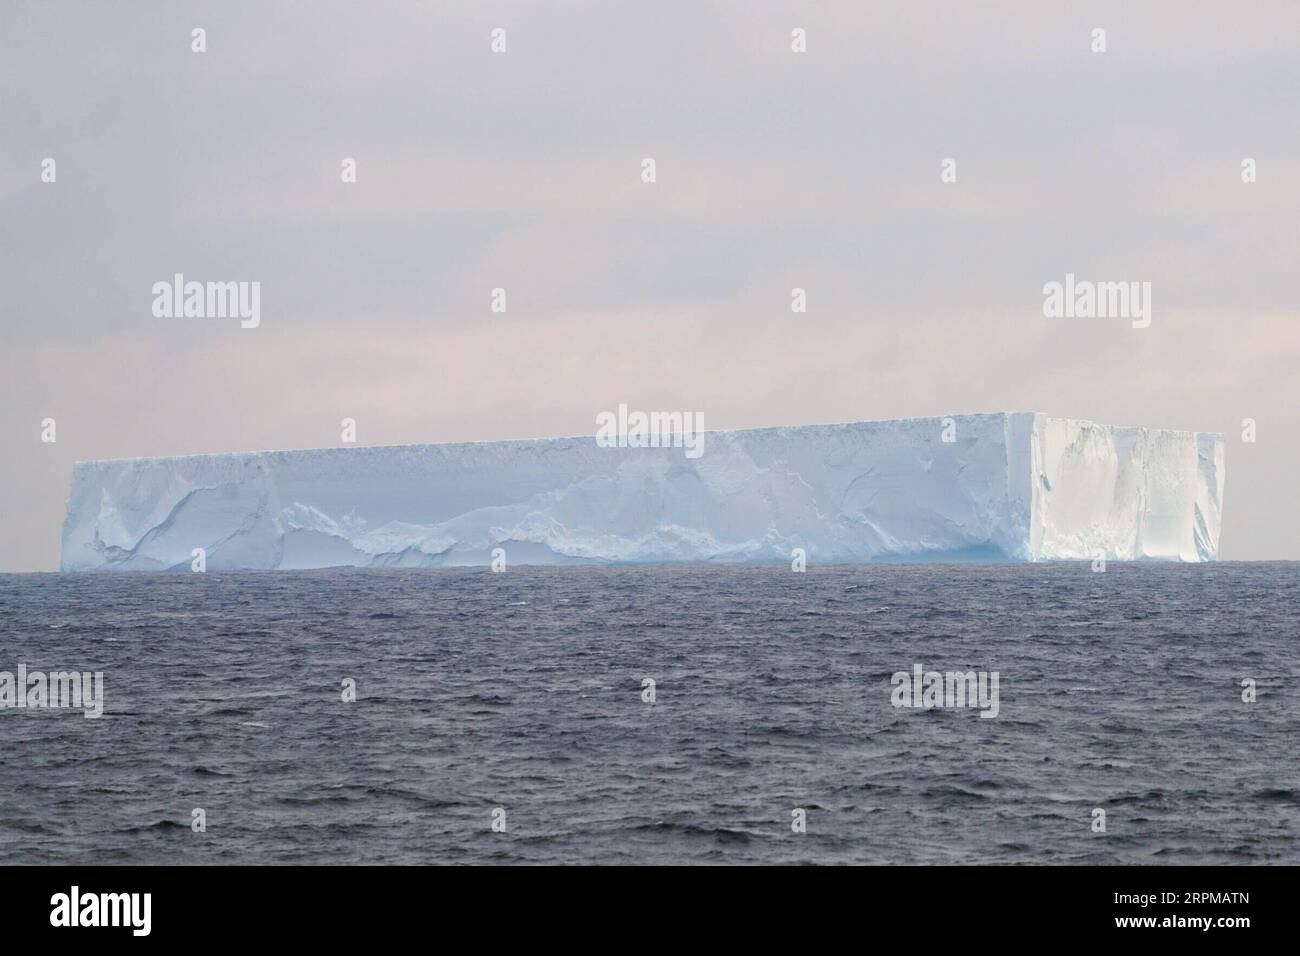 200206 -- AN BORD VON XUELONG 2, 6. Februar 2020 -- Foto vom 5. Februar 2020 zeigt einen Eisberg, der von Chinas polarem Eisbrecher Xuelong 2 oder Snow Dragon 2 aus gesehen wurde, der während der 36. Antarktis-Expedition auf dem Weddell-Meer zur chinesischen Zhongshan-Station fährt. EyesonSci CHINA-XUELONG 2-WEDDELL SEA CN LiuxShiping PUBLICATIONxNOTxINxCHN Stockfoto